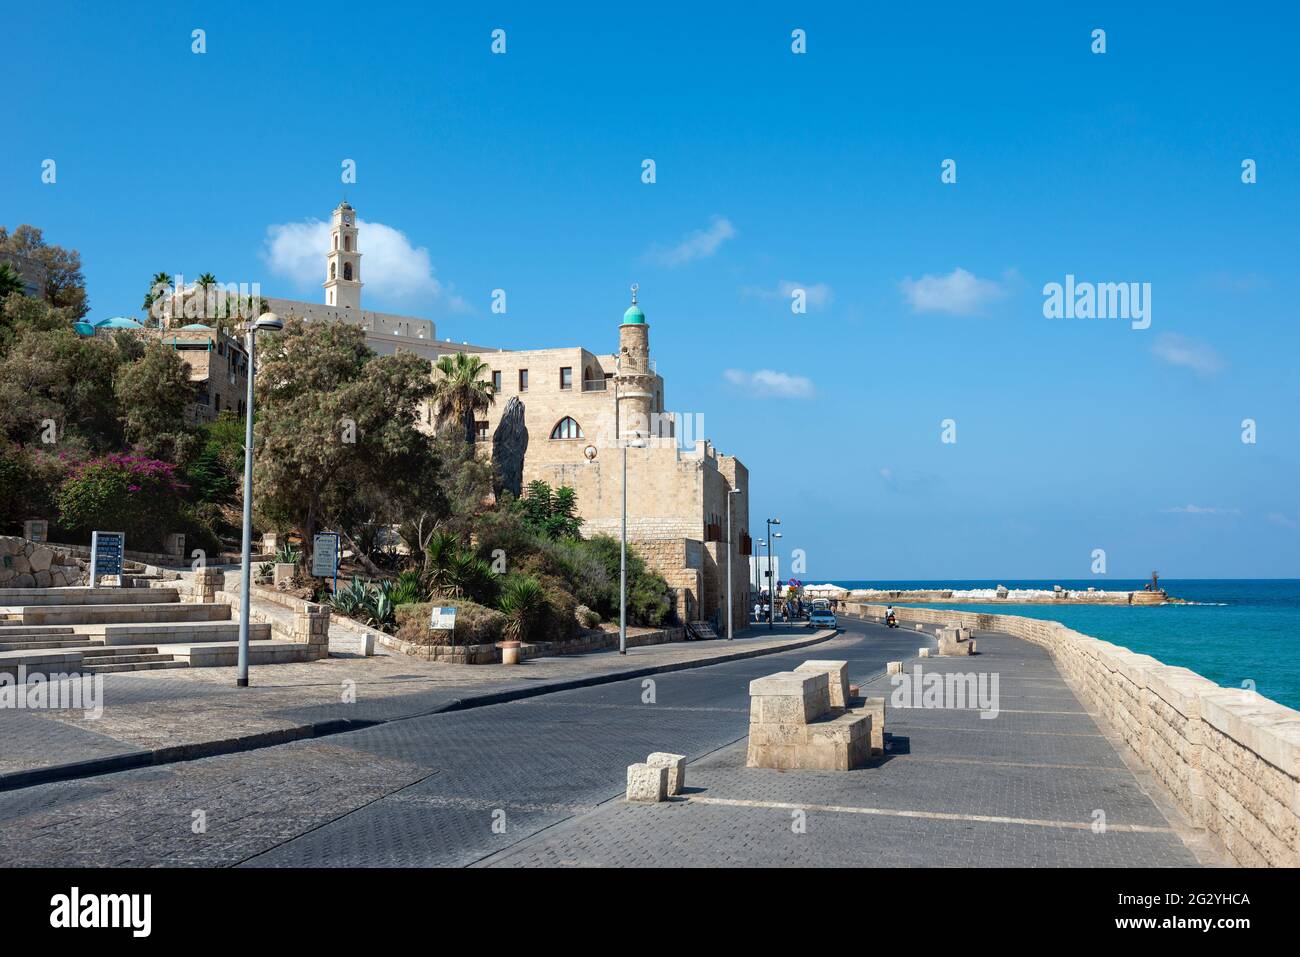 Vista de la Mezquita de Al-Bahr o Mezquita del Mar, minarete de la mezquita en el antiguo Jaffa, antiguo puerto de Jaffa, costa del Mar Mediterráneo en Tel Aviv Yaffo, Israel Foto de stock